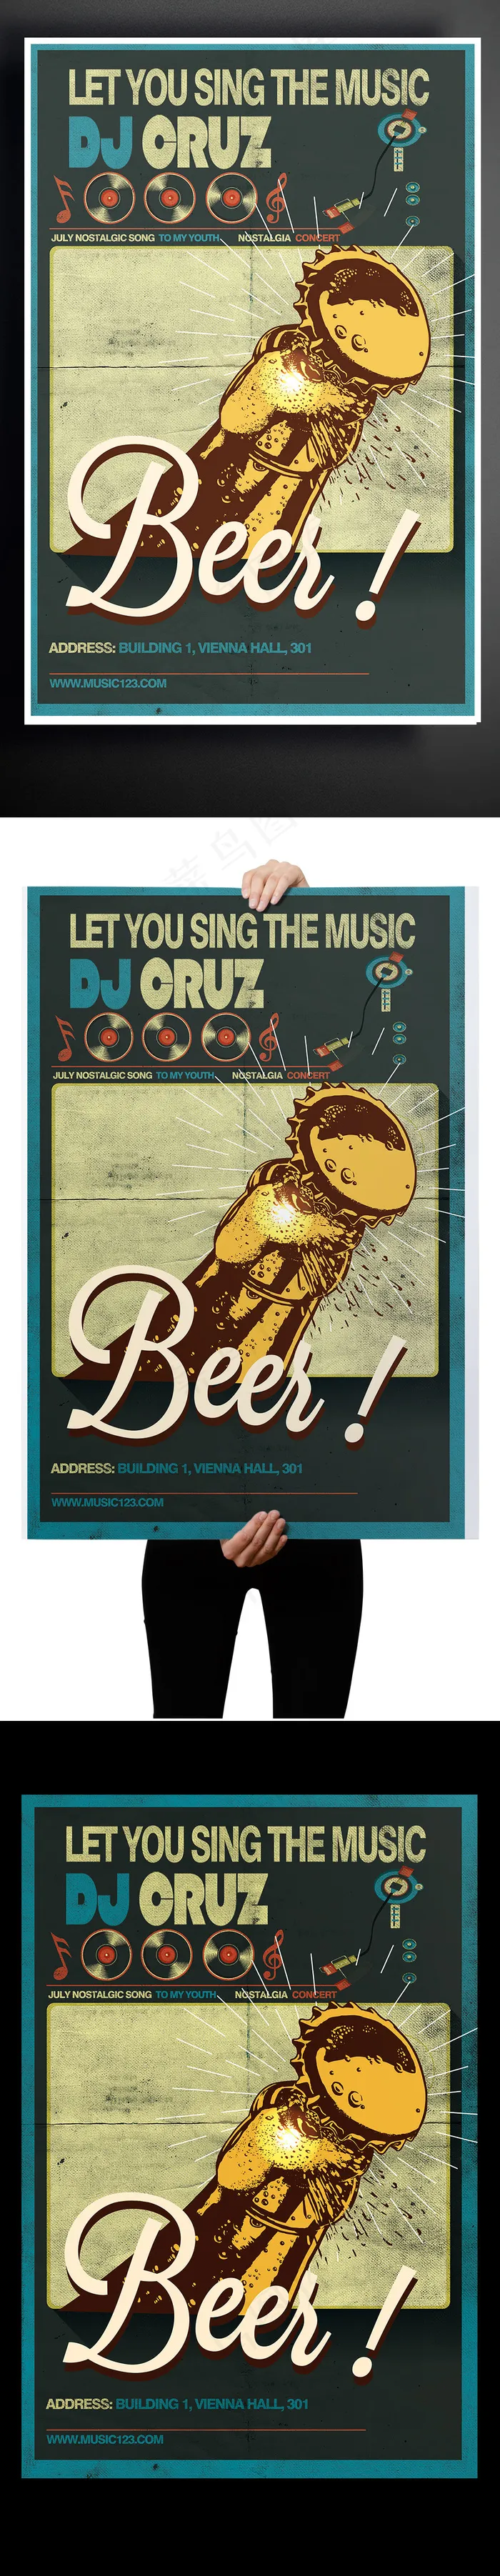 国外创意啤酒音乐海报